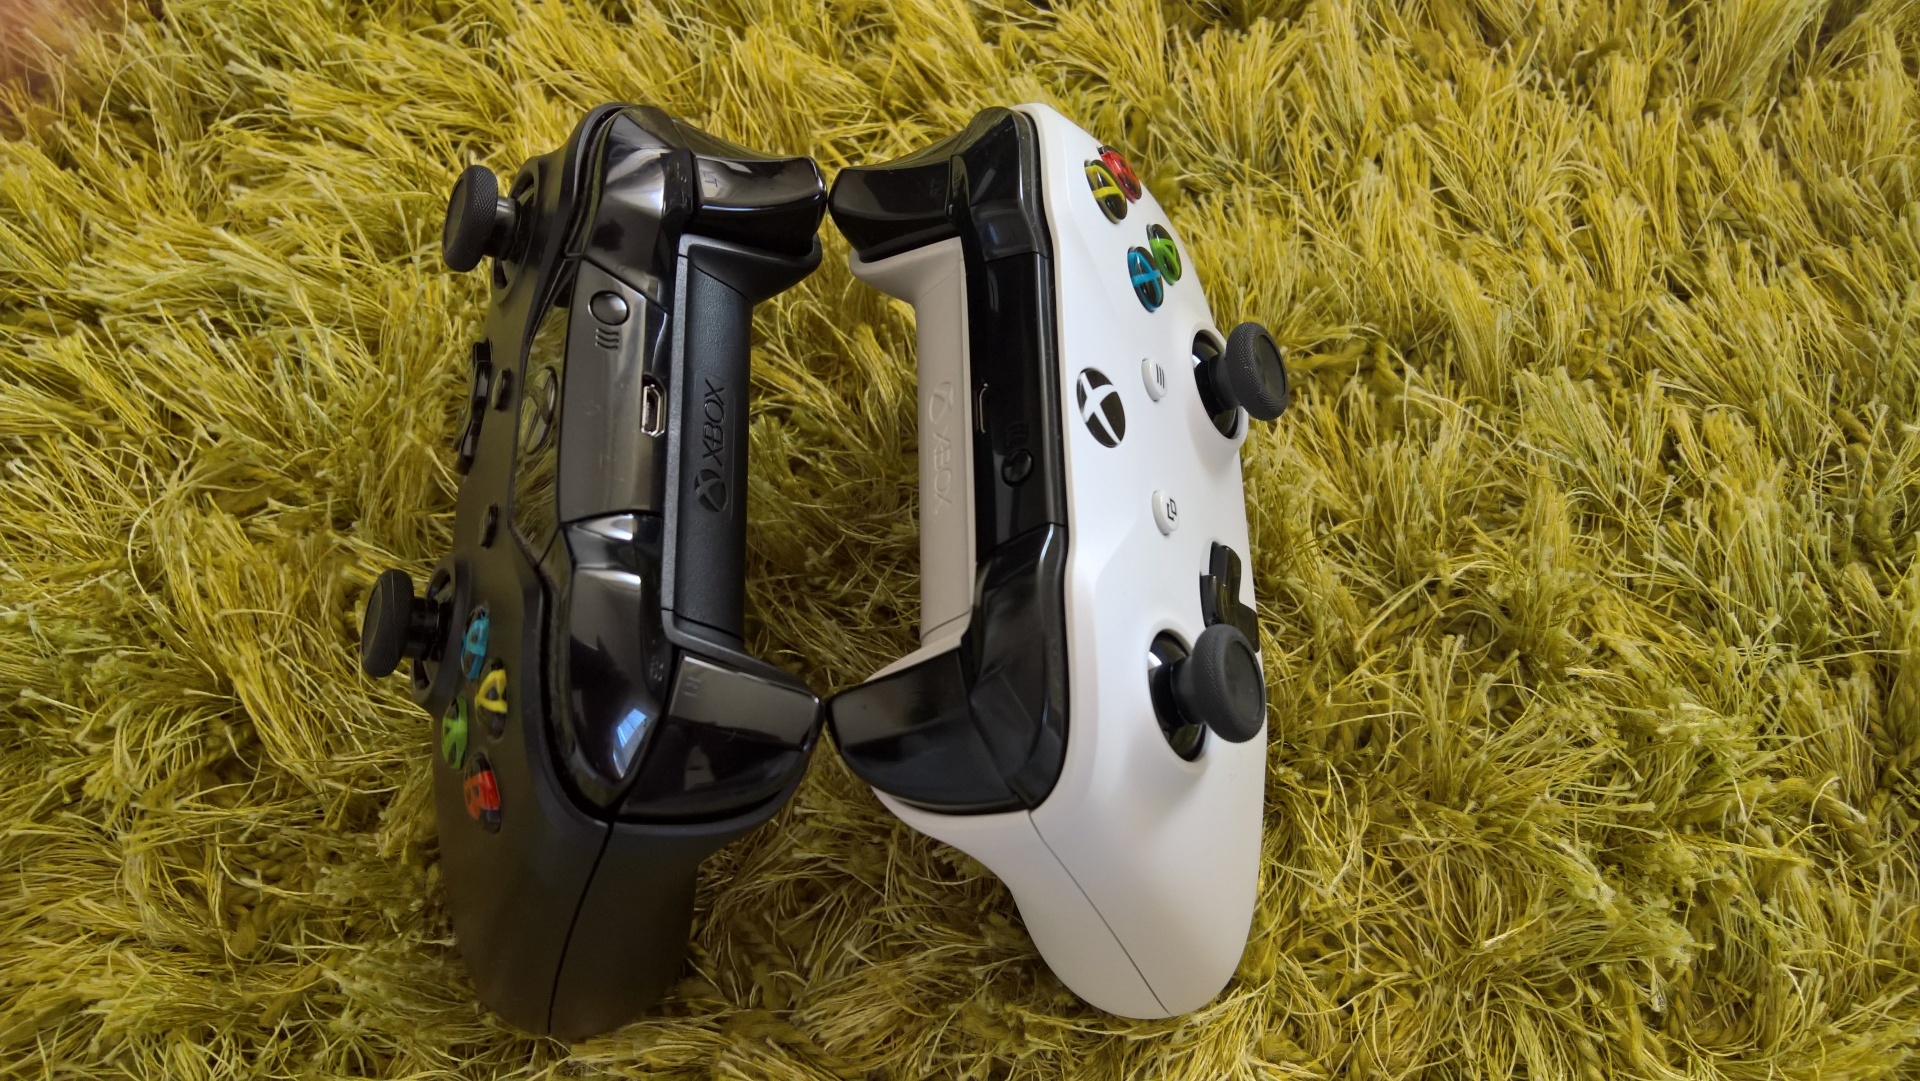 Xbox One S - test Gamepad je dizajnovo len mierne upraven, rozdiel je hlavne v materiloch a pridan Bluetooth podpory.